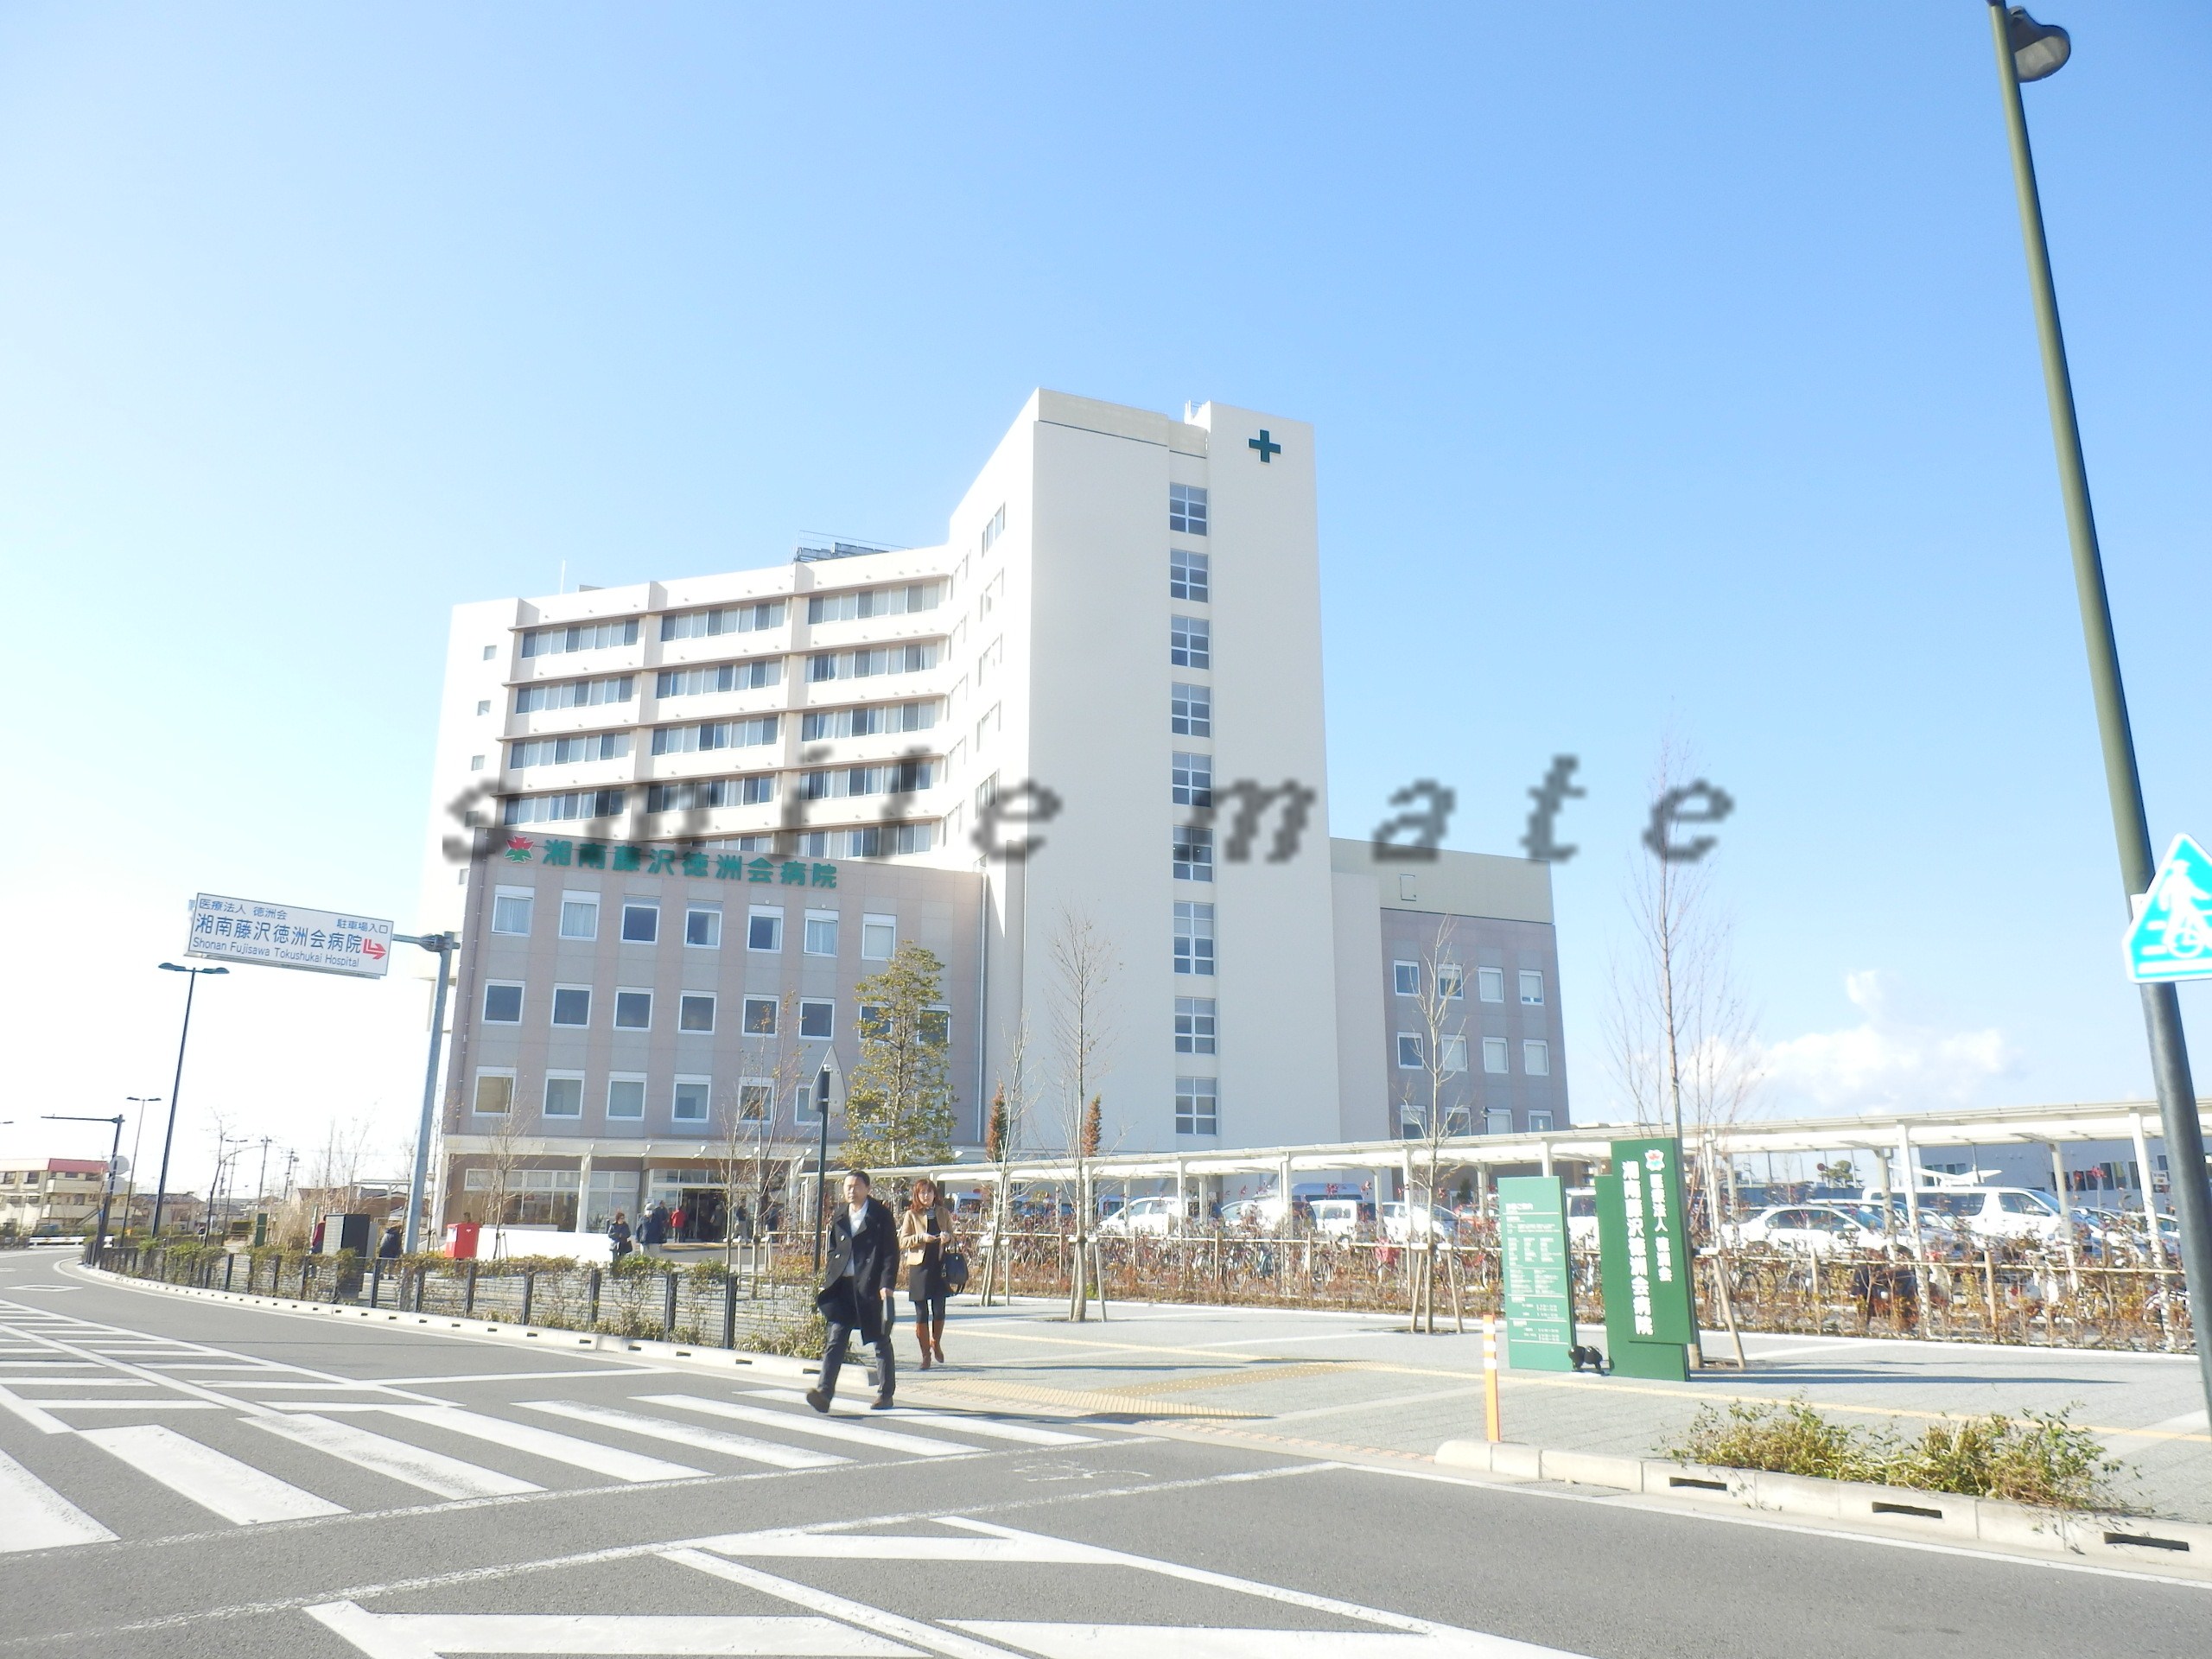 Hospital. 950m to the medical law virtue Zhuzhou Board Shonan Fujisawa Tokushukai Hospital (Hospital)